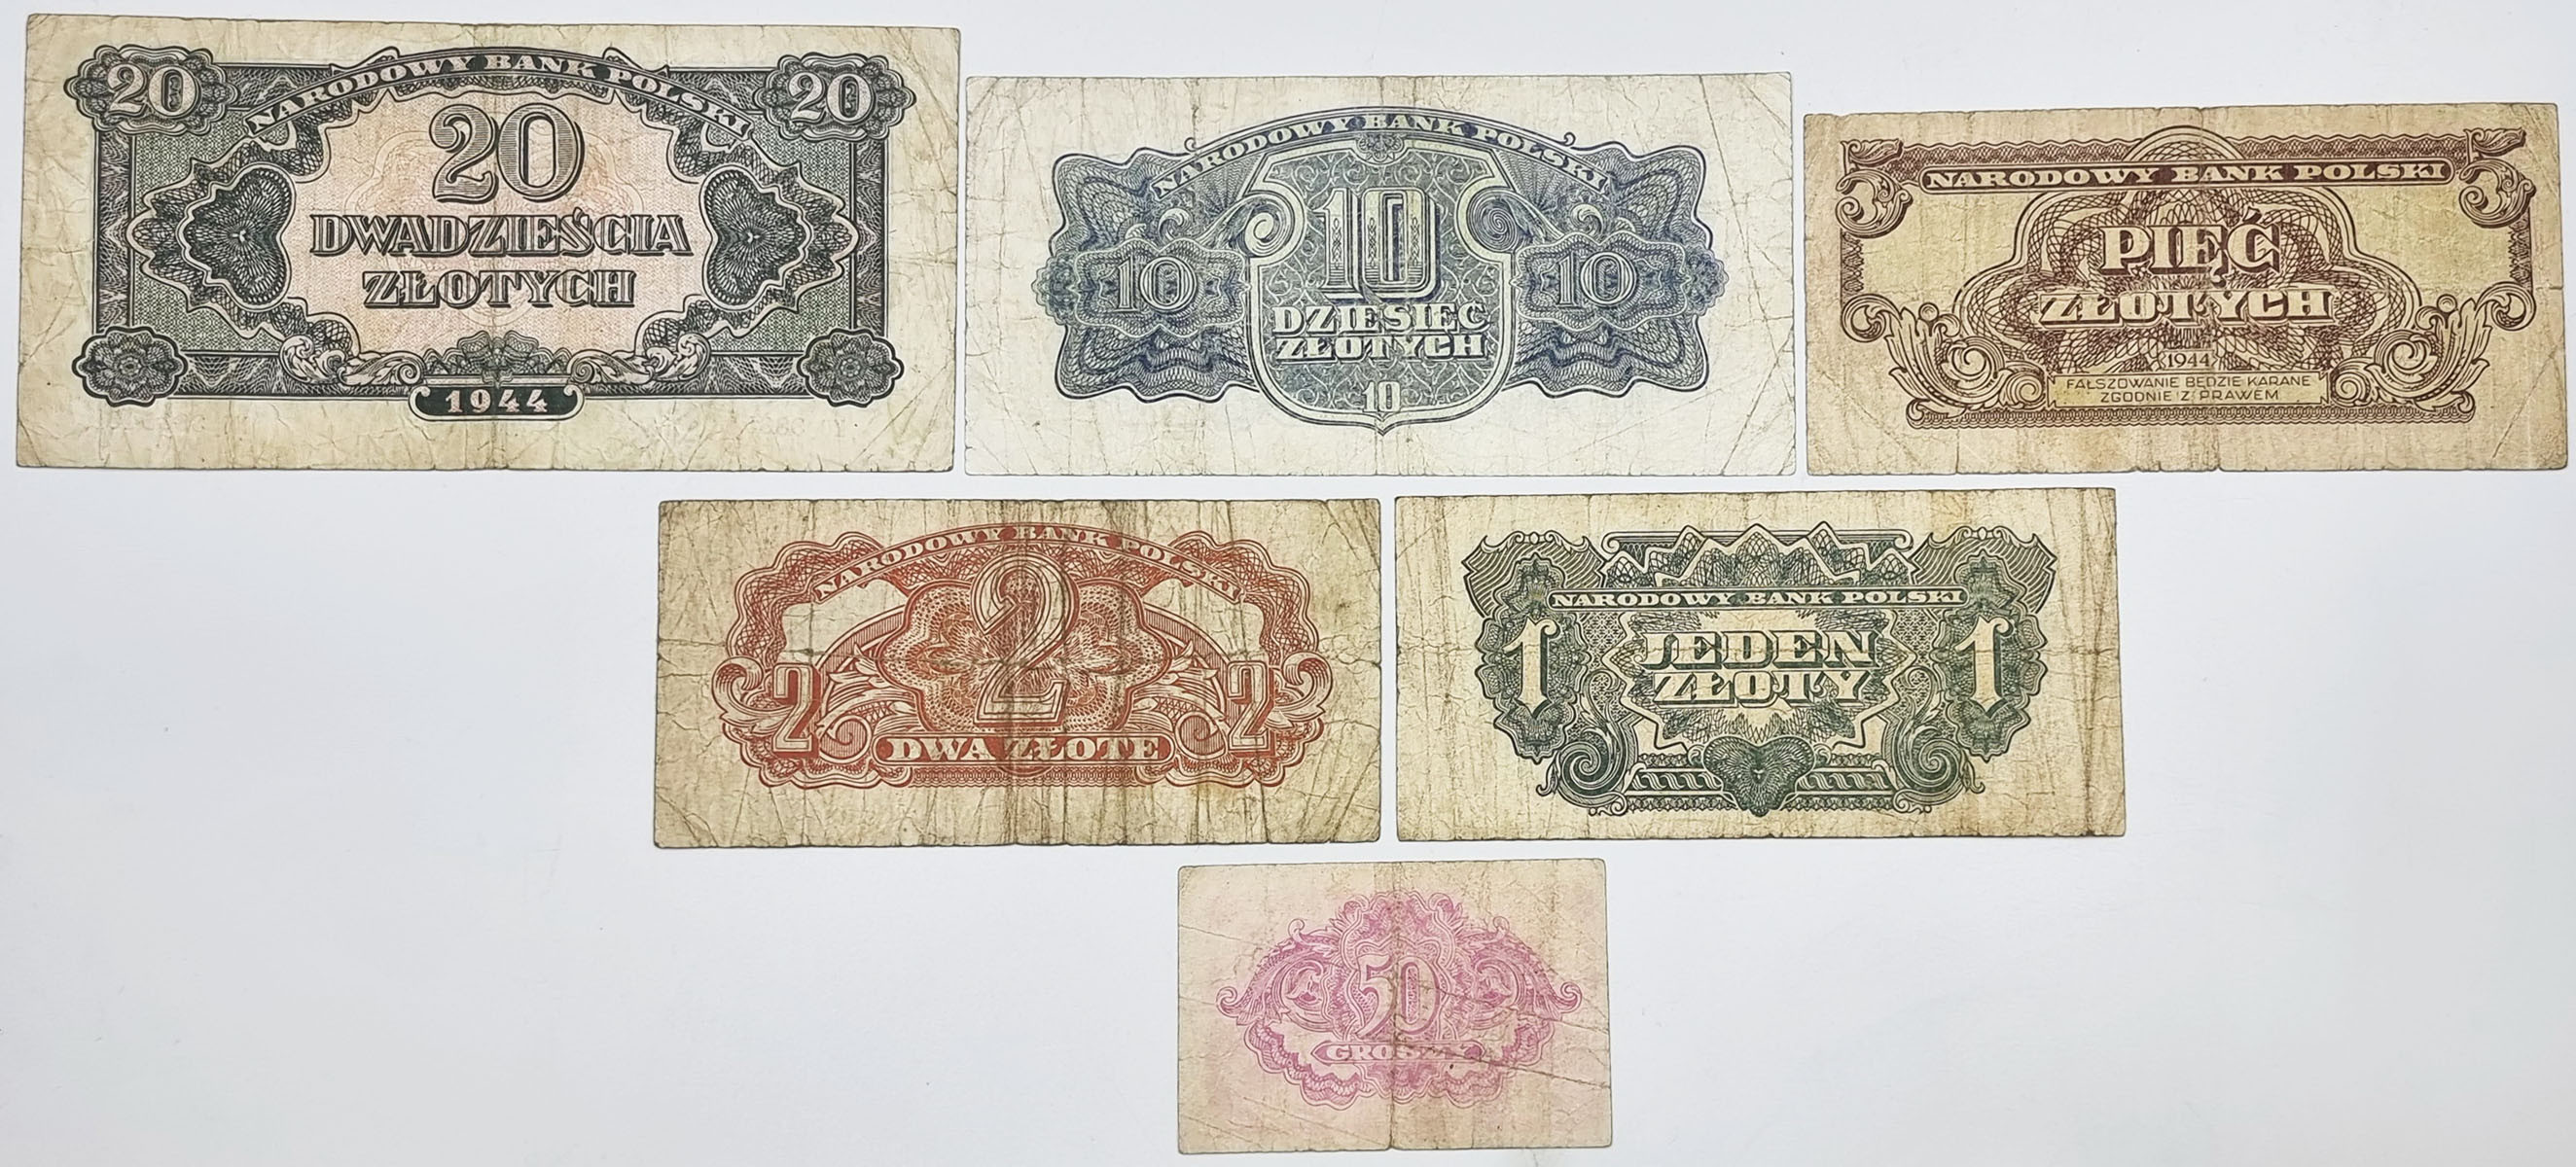 50 groszy do 20 złotych 1946, zestaw 6 banknotów